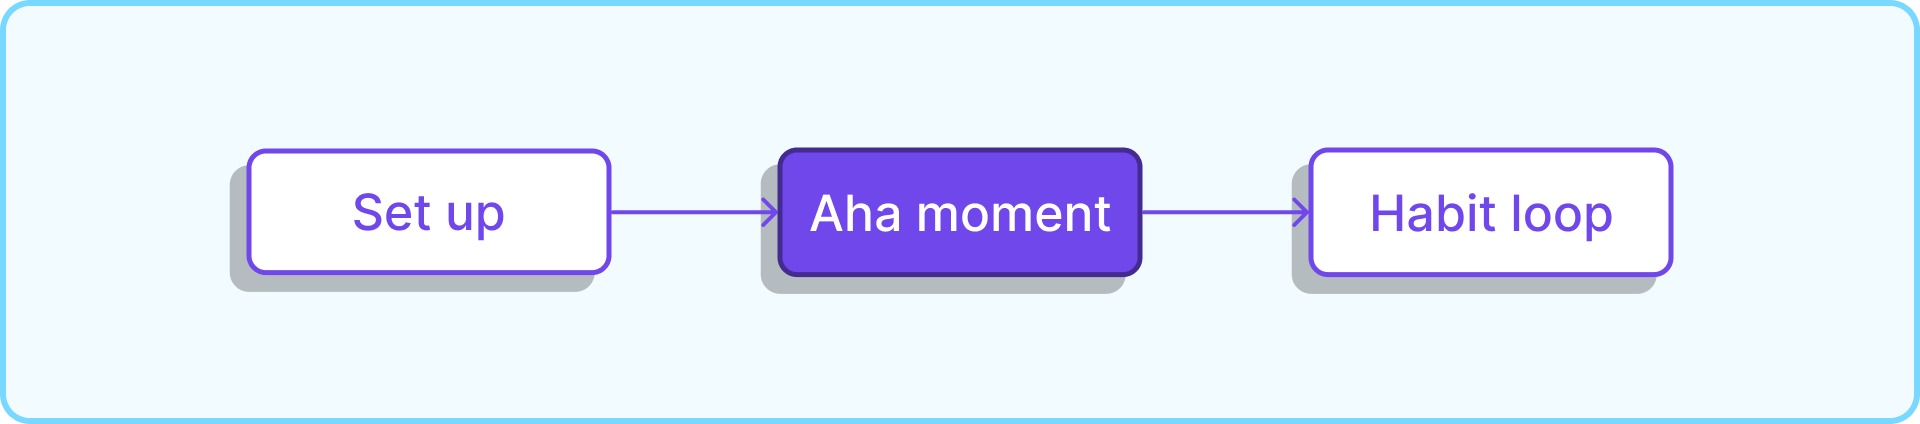 Aha moment diagram